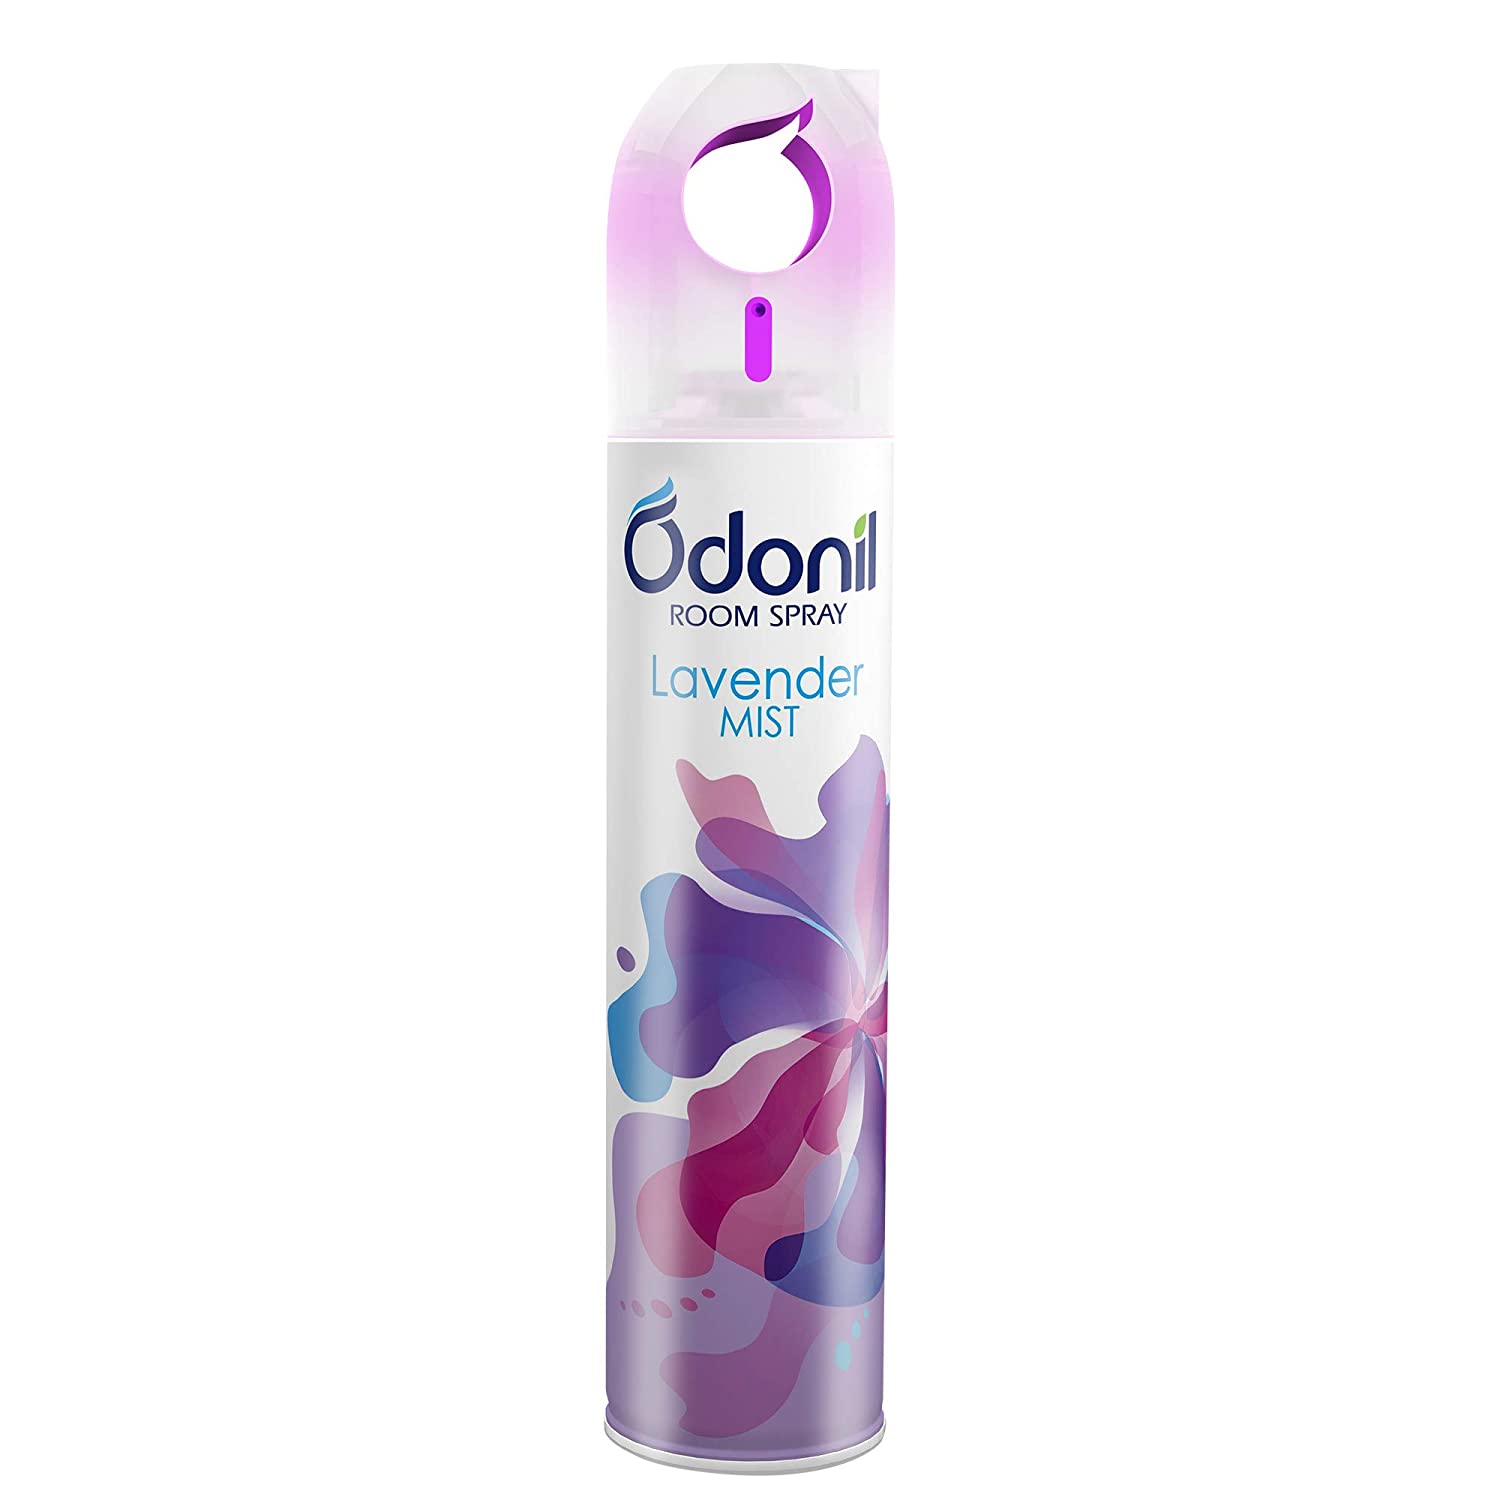 Odonil Room Air Freshener Spray - Lavender Mist, 220 ml | Rs. 169